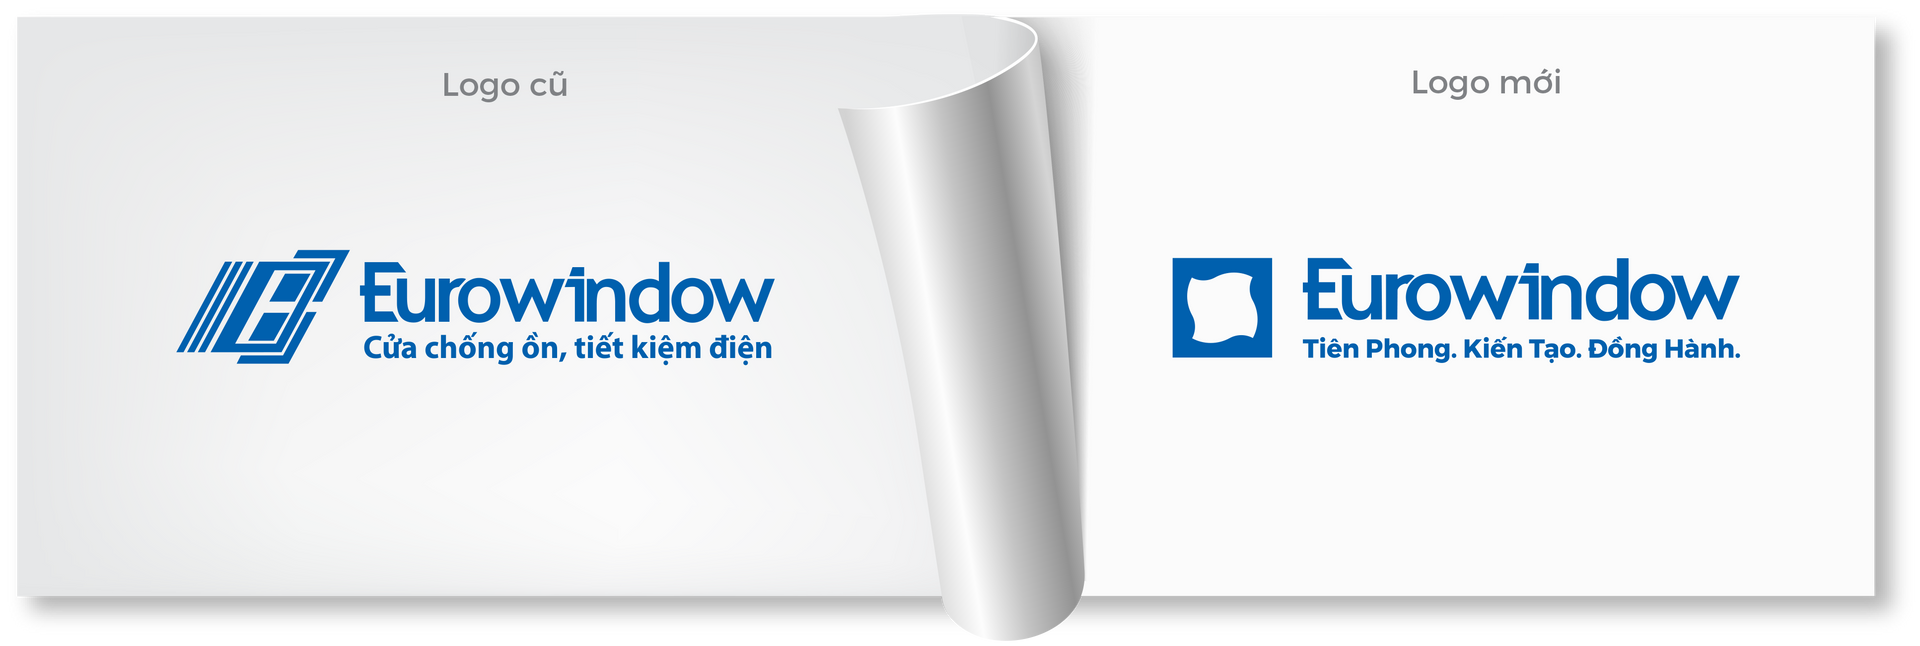 Eurowindow công bố bộ nhận diện thương hiệu mới